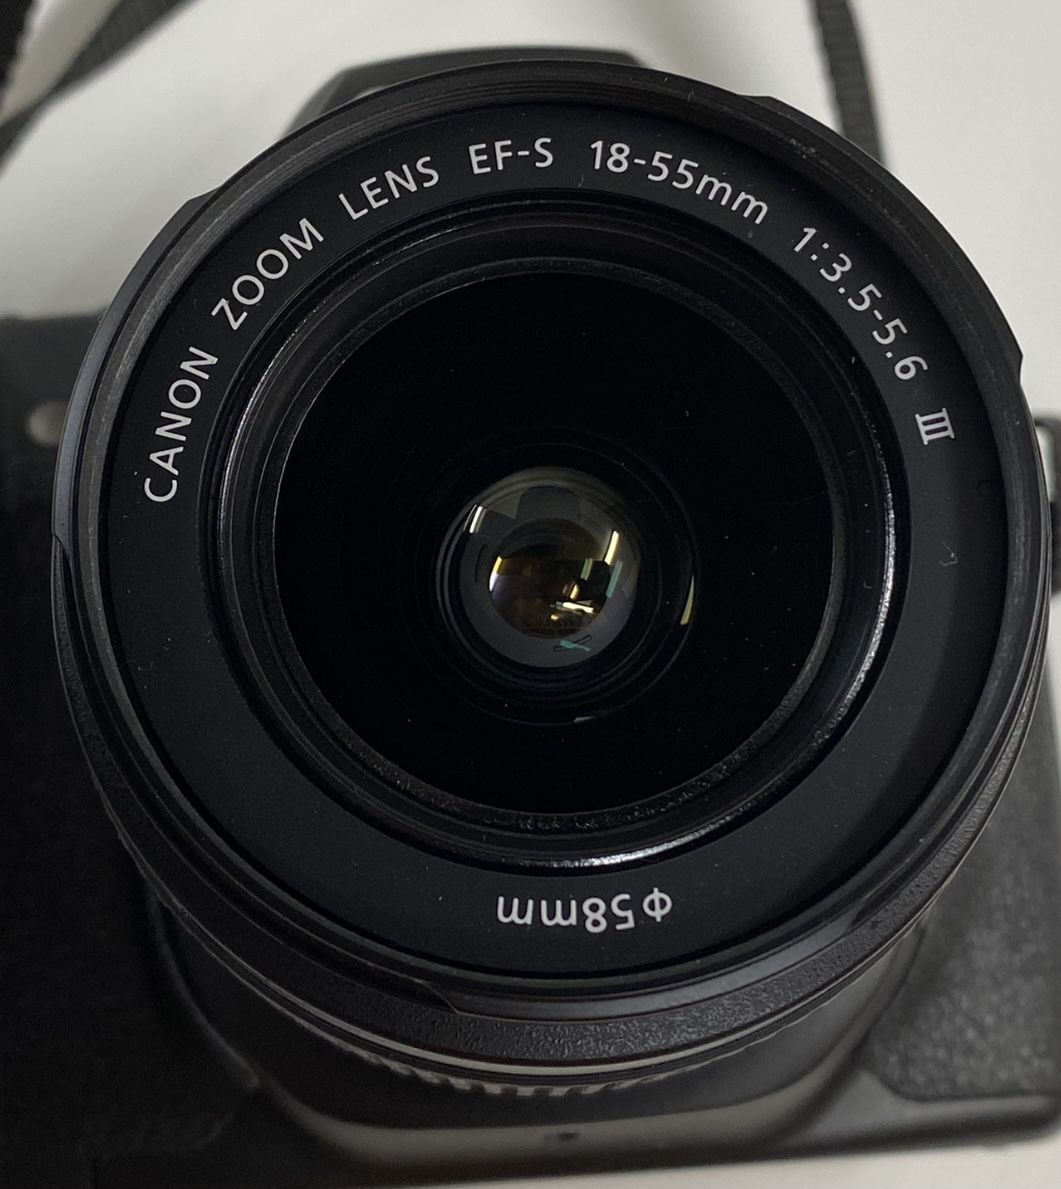 Canon EF-S 18-55mm AF MF Lens